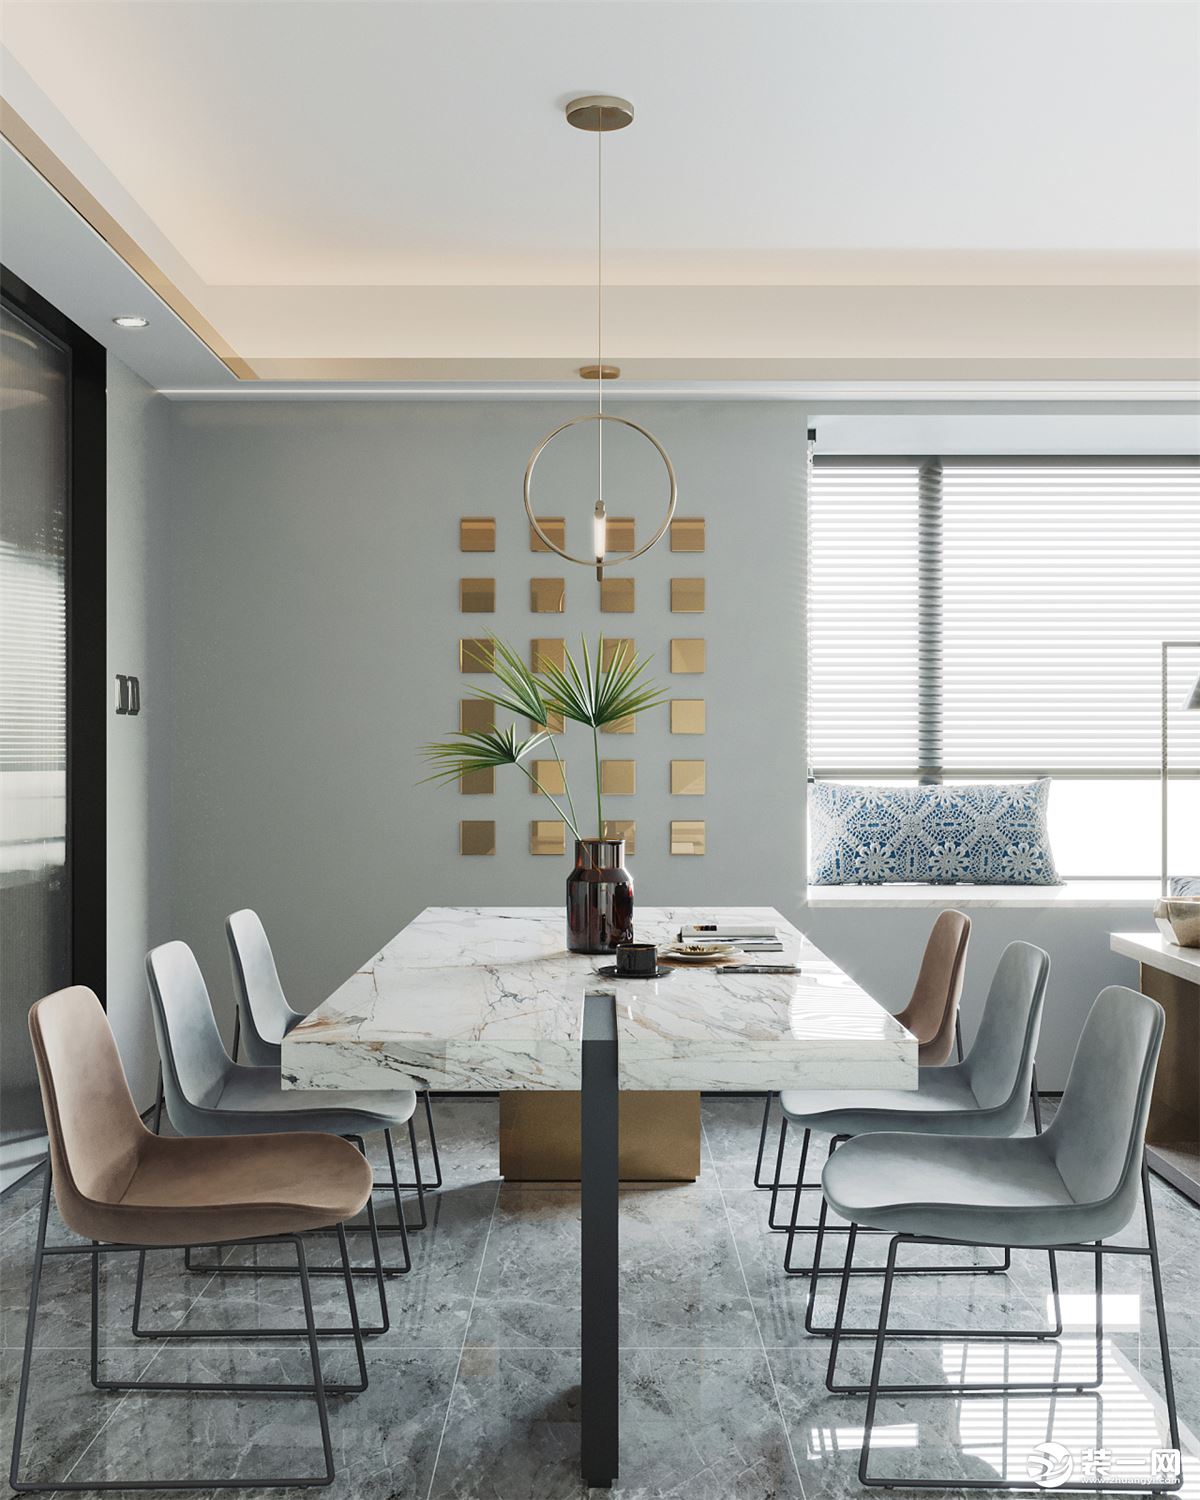 大理石桌面的餐桌，提升空间的档次与华丽感，也可以让用餐氛围显得更加端庄雅致。